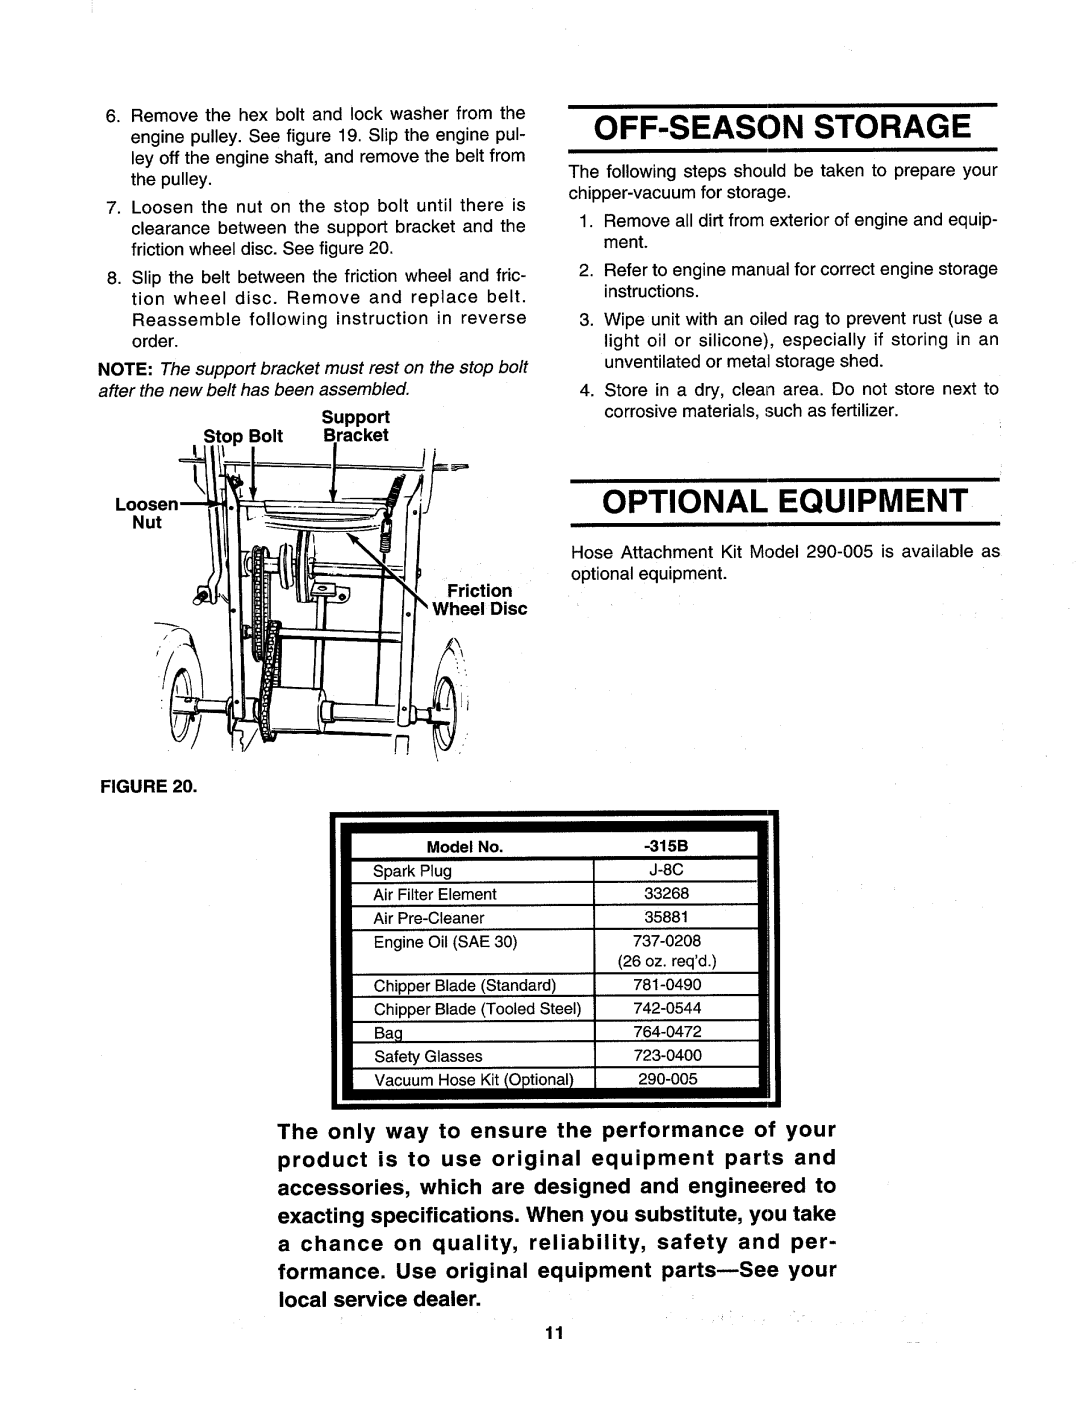 MTD 315B manual 